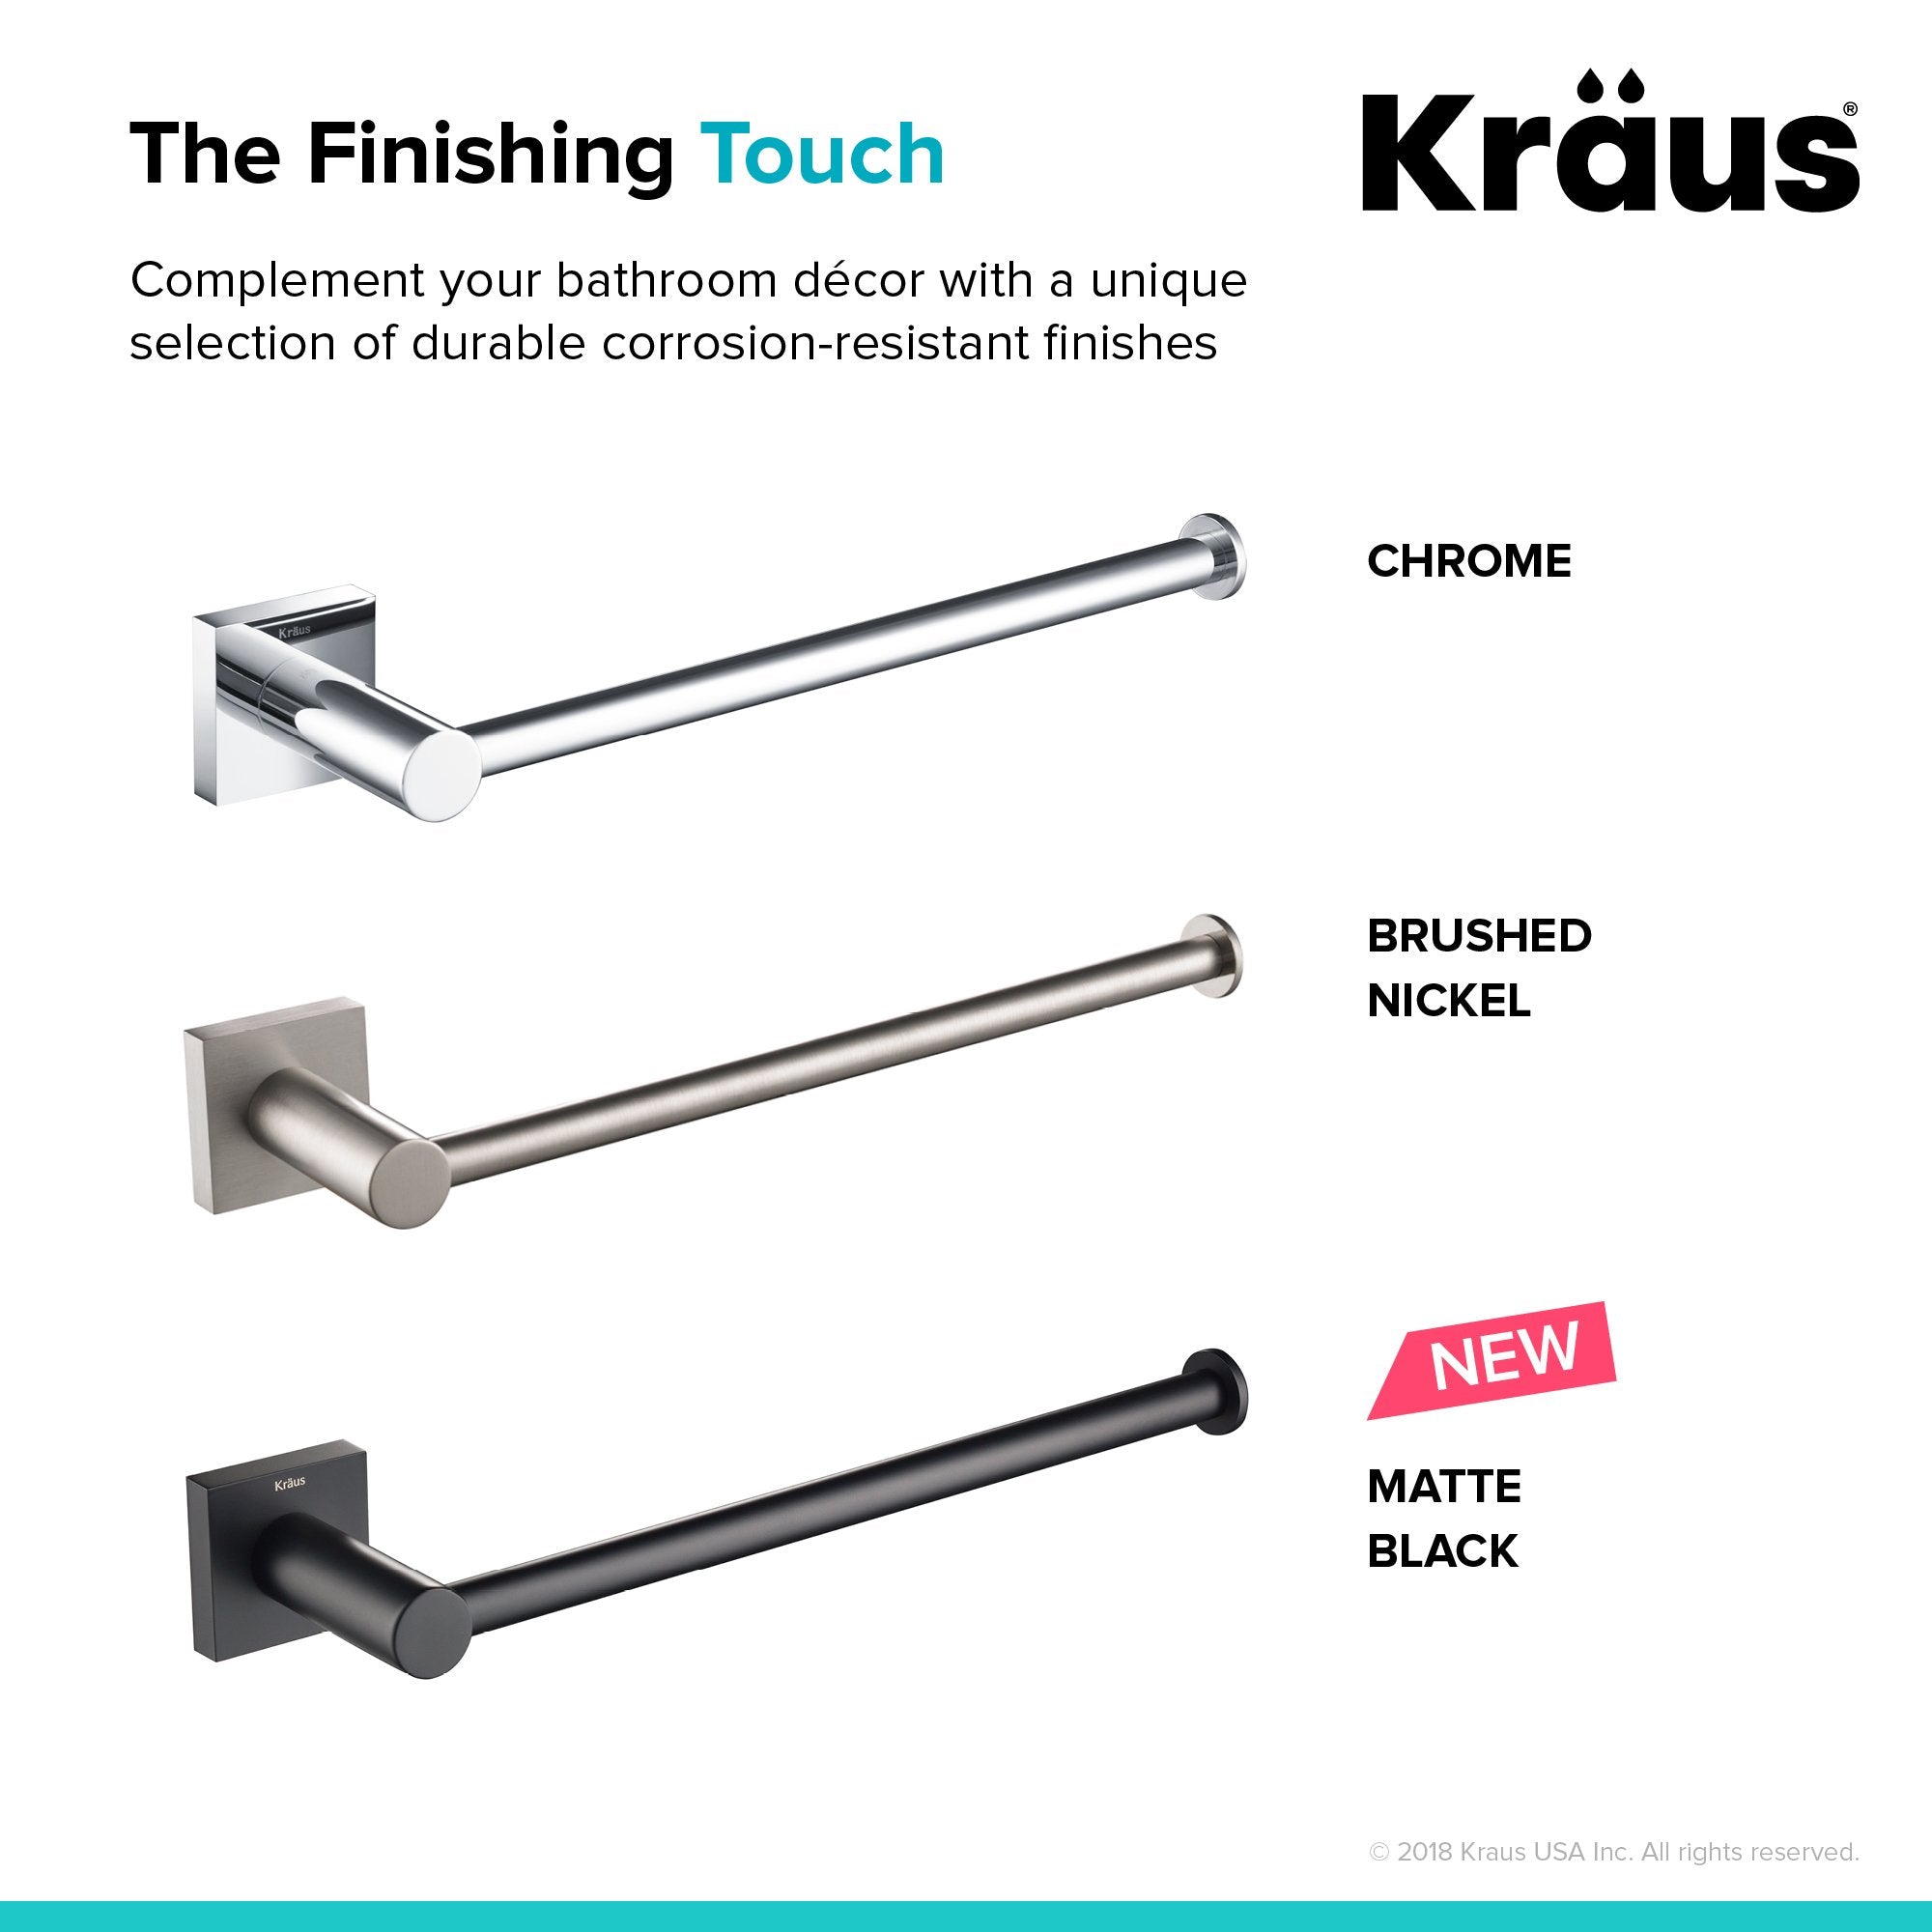 KRAUS Ventus™ Bathroom Towel Bar-Bathroom Accessories-KRAUS